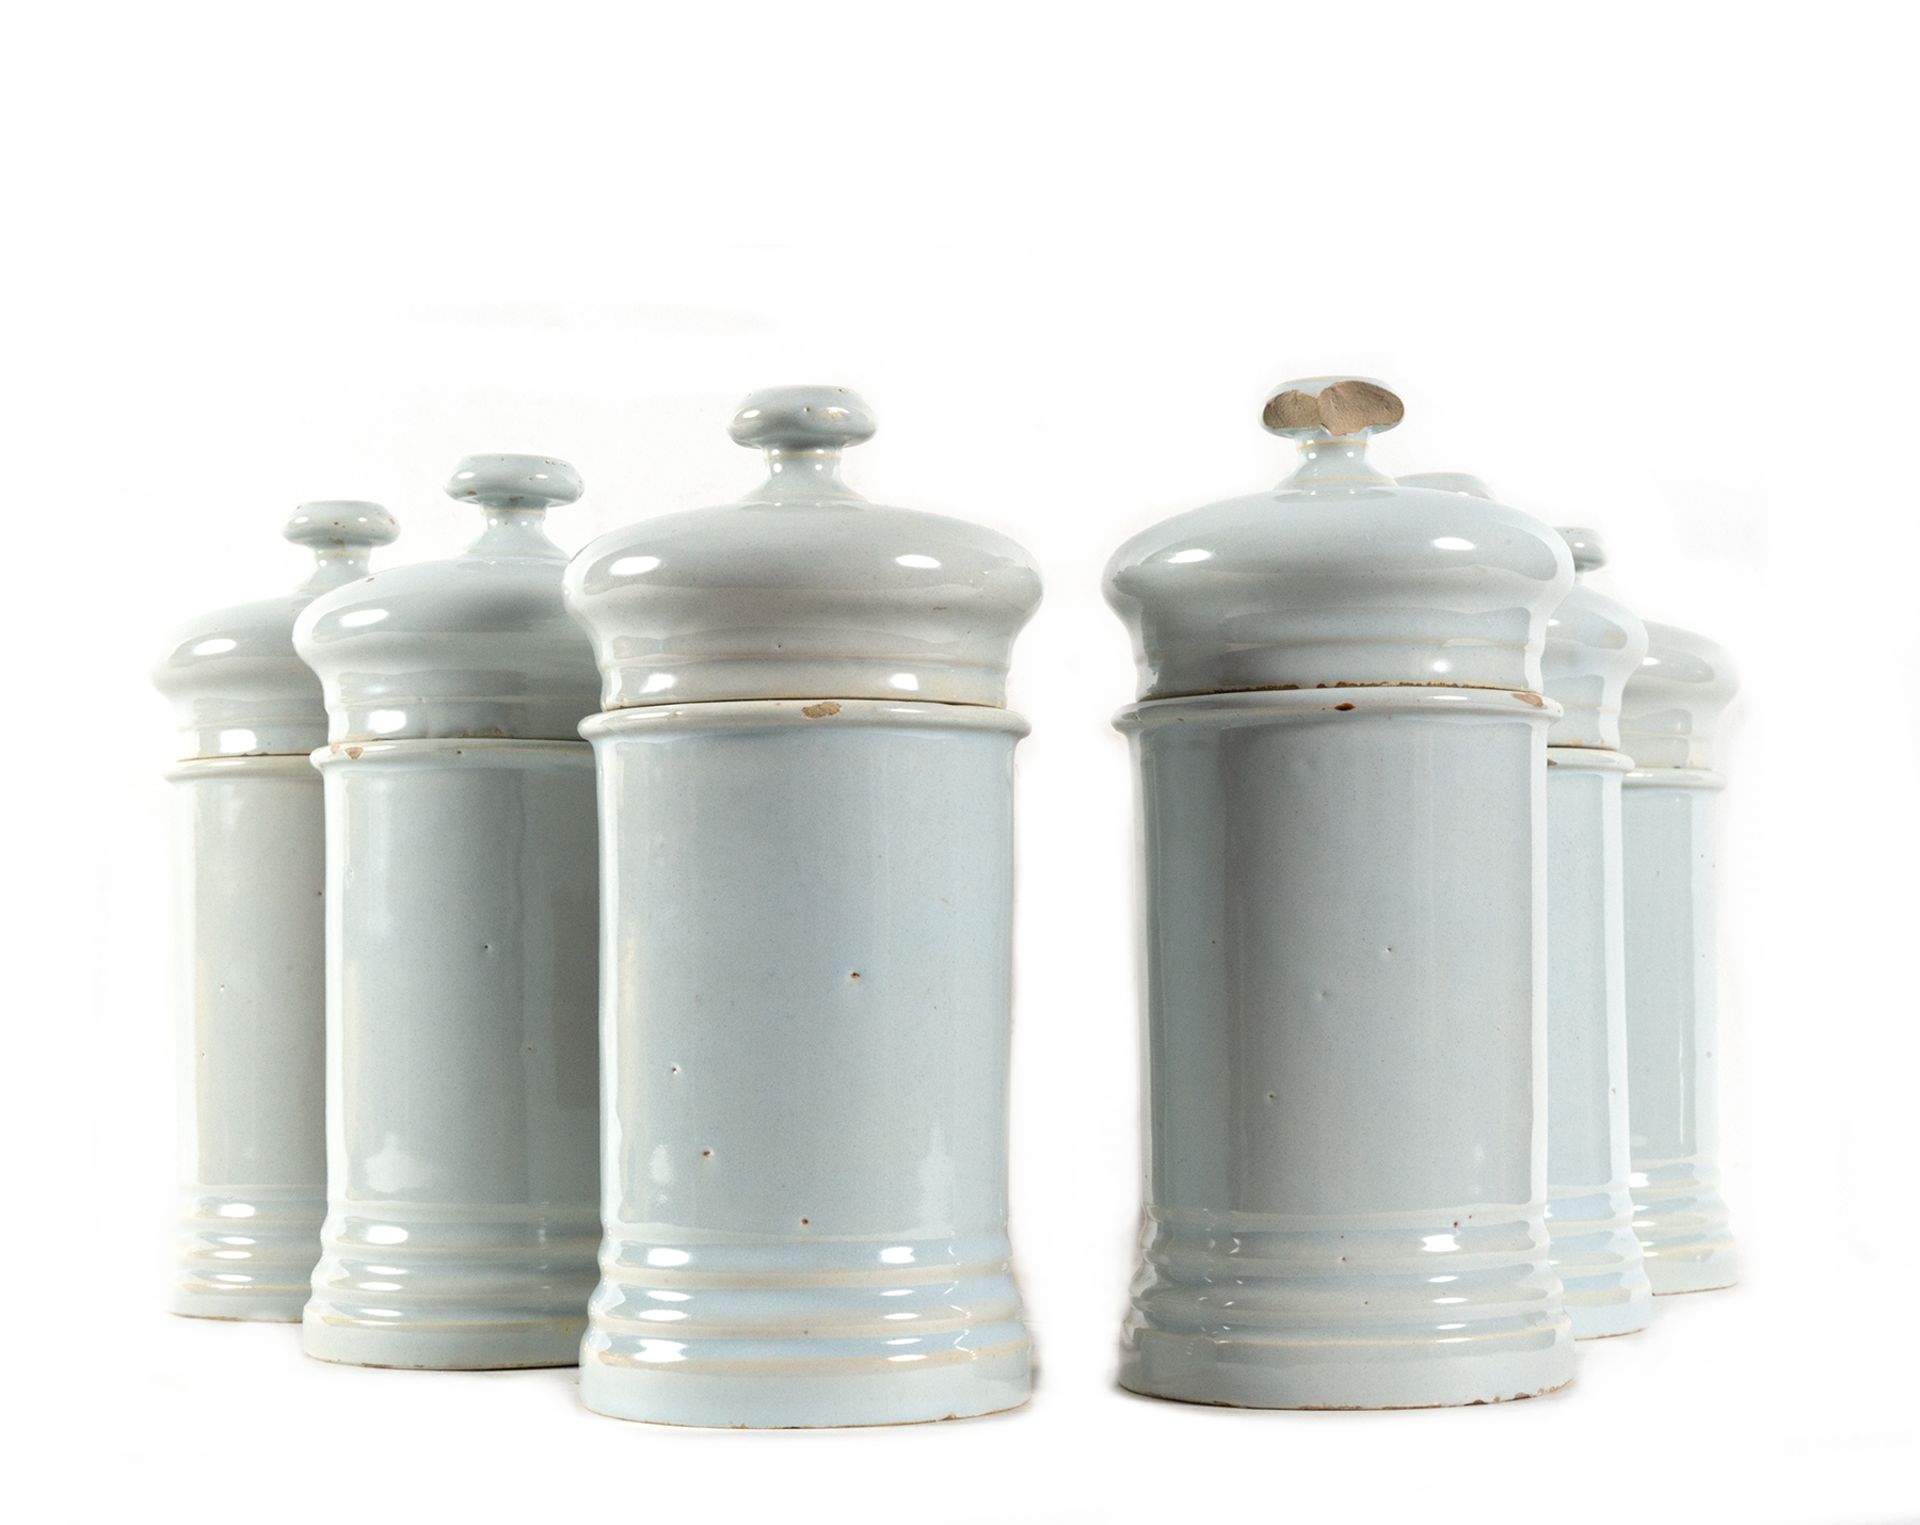 Set of six glazed ceramic pharmacy jars, 19th century - Image 2 of 2